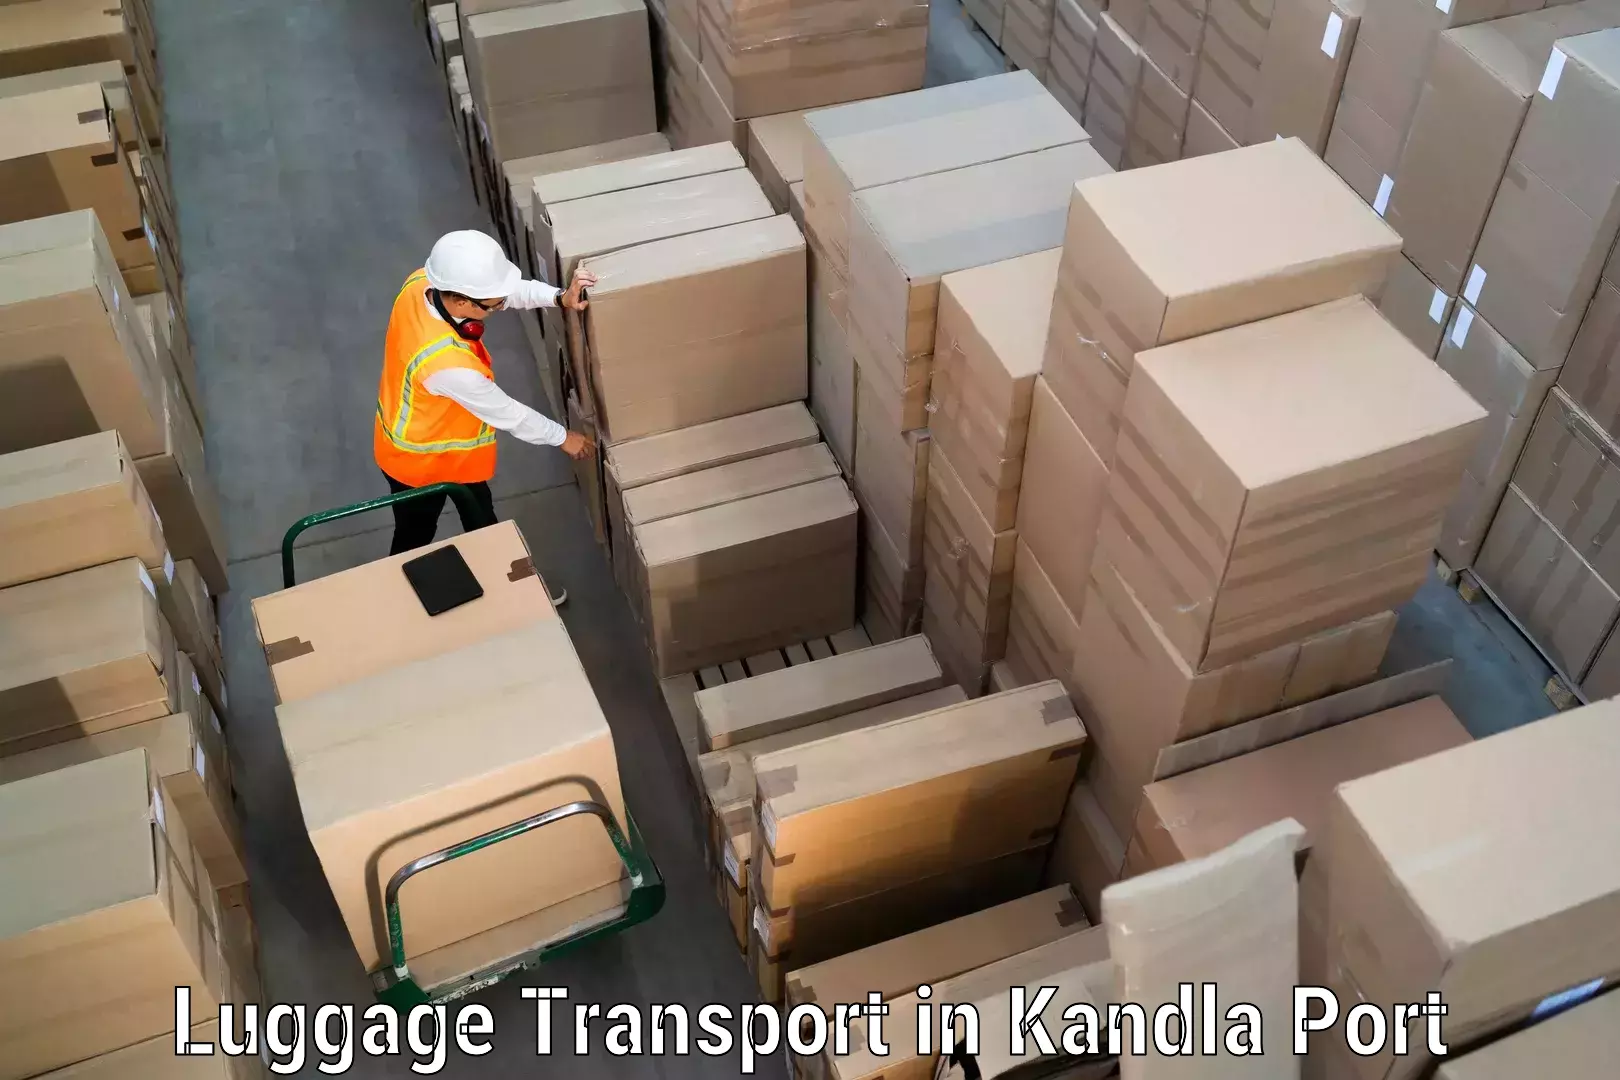 Baggage transport network in Kandla Port